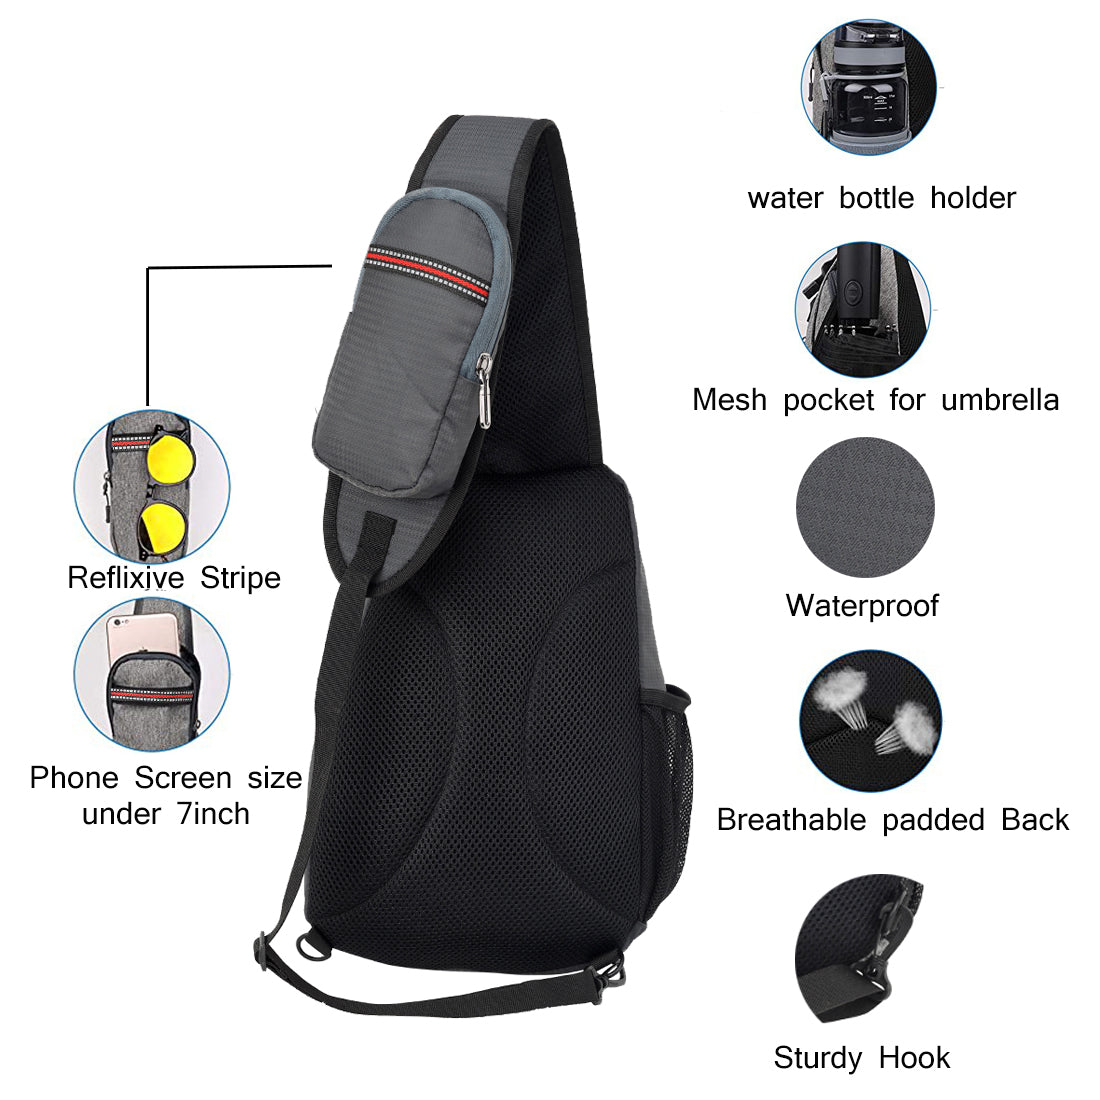 Travelon Messenger Bag review: Anti-theft travel purse | CNN Underscored